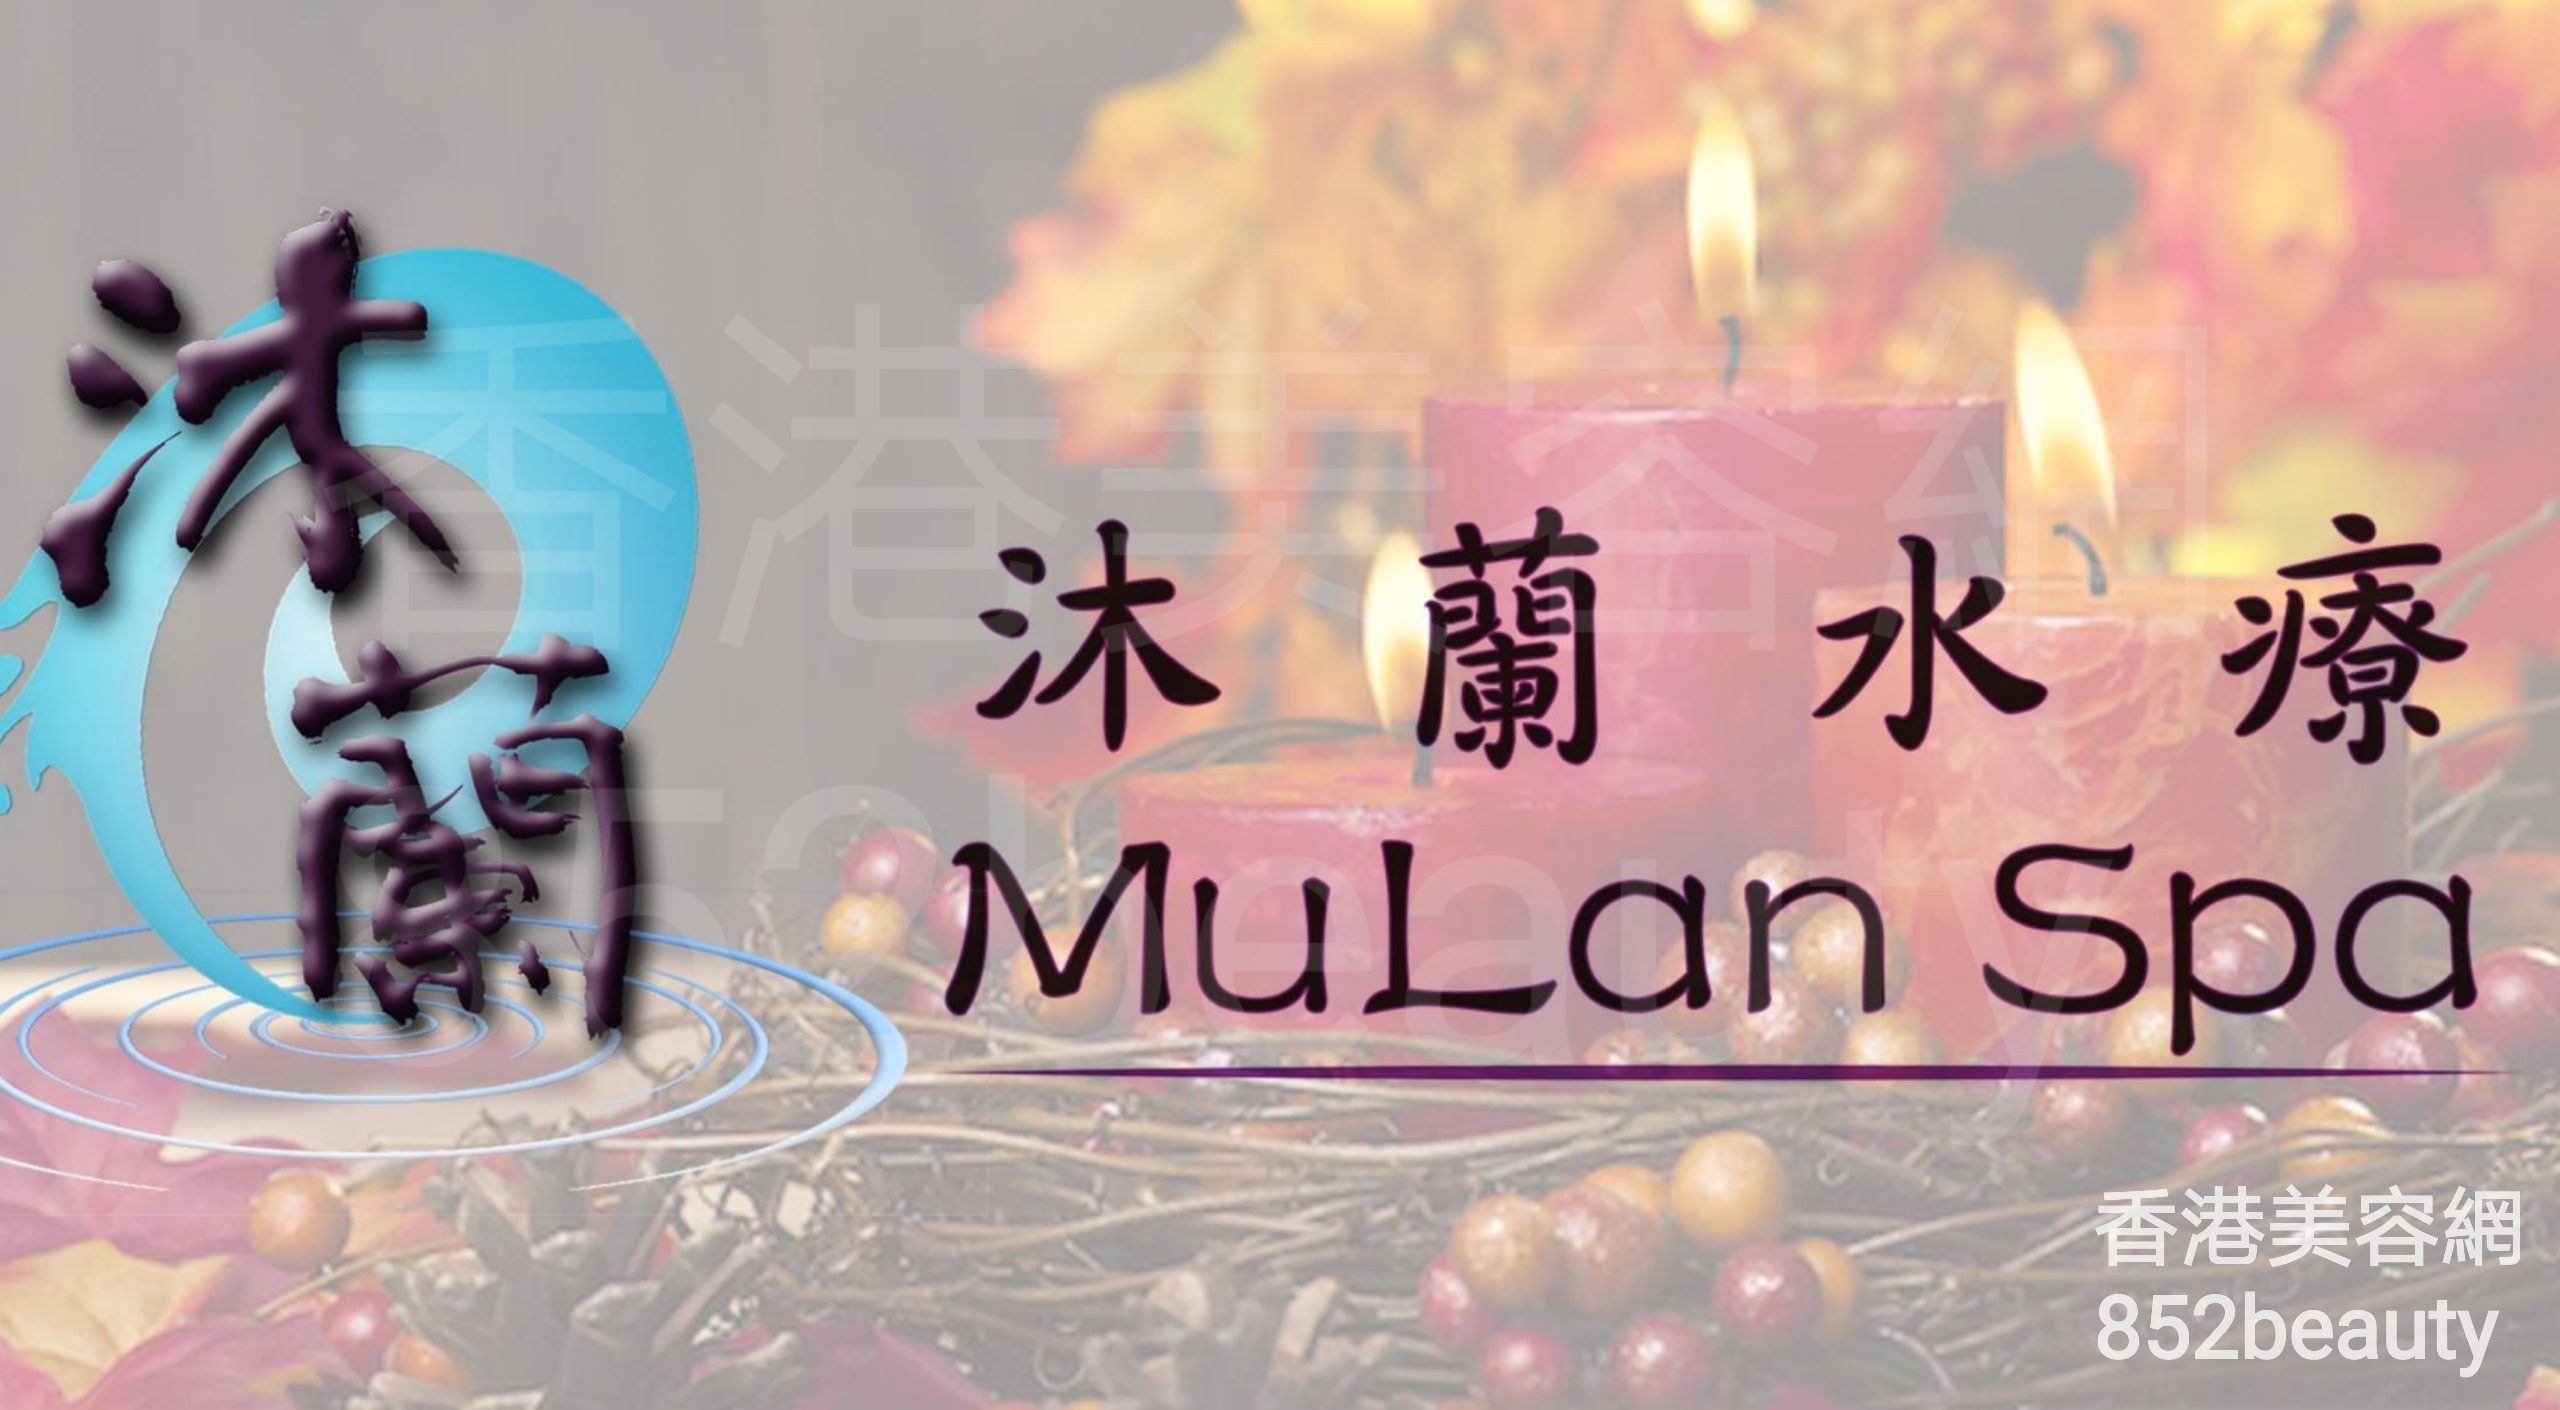 按摩/SPA: 沐蘭水療 - MuLan Spa (灣仔分店)